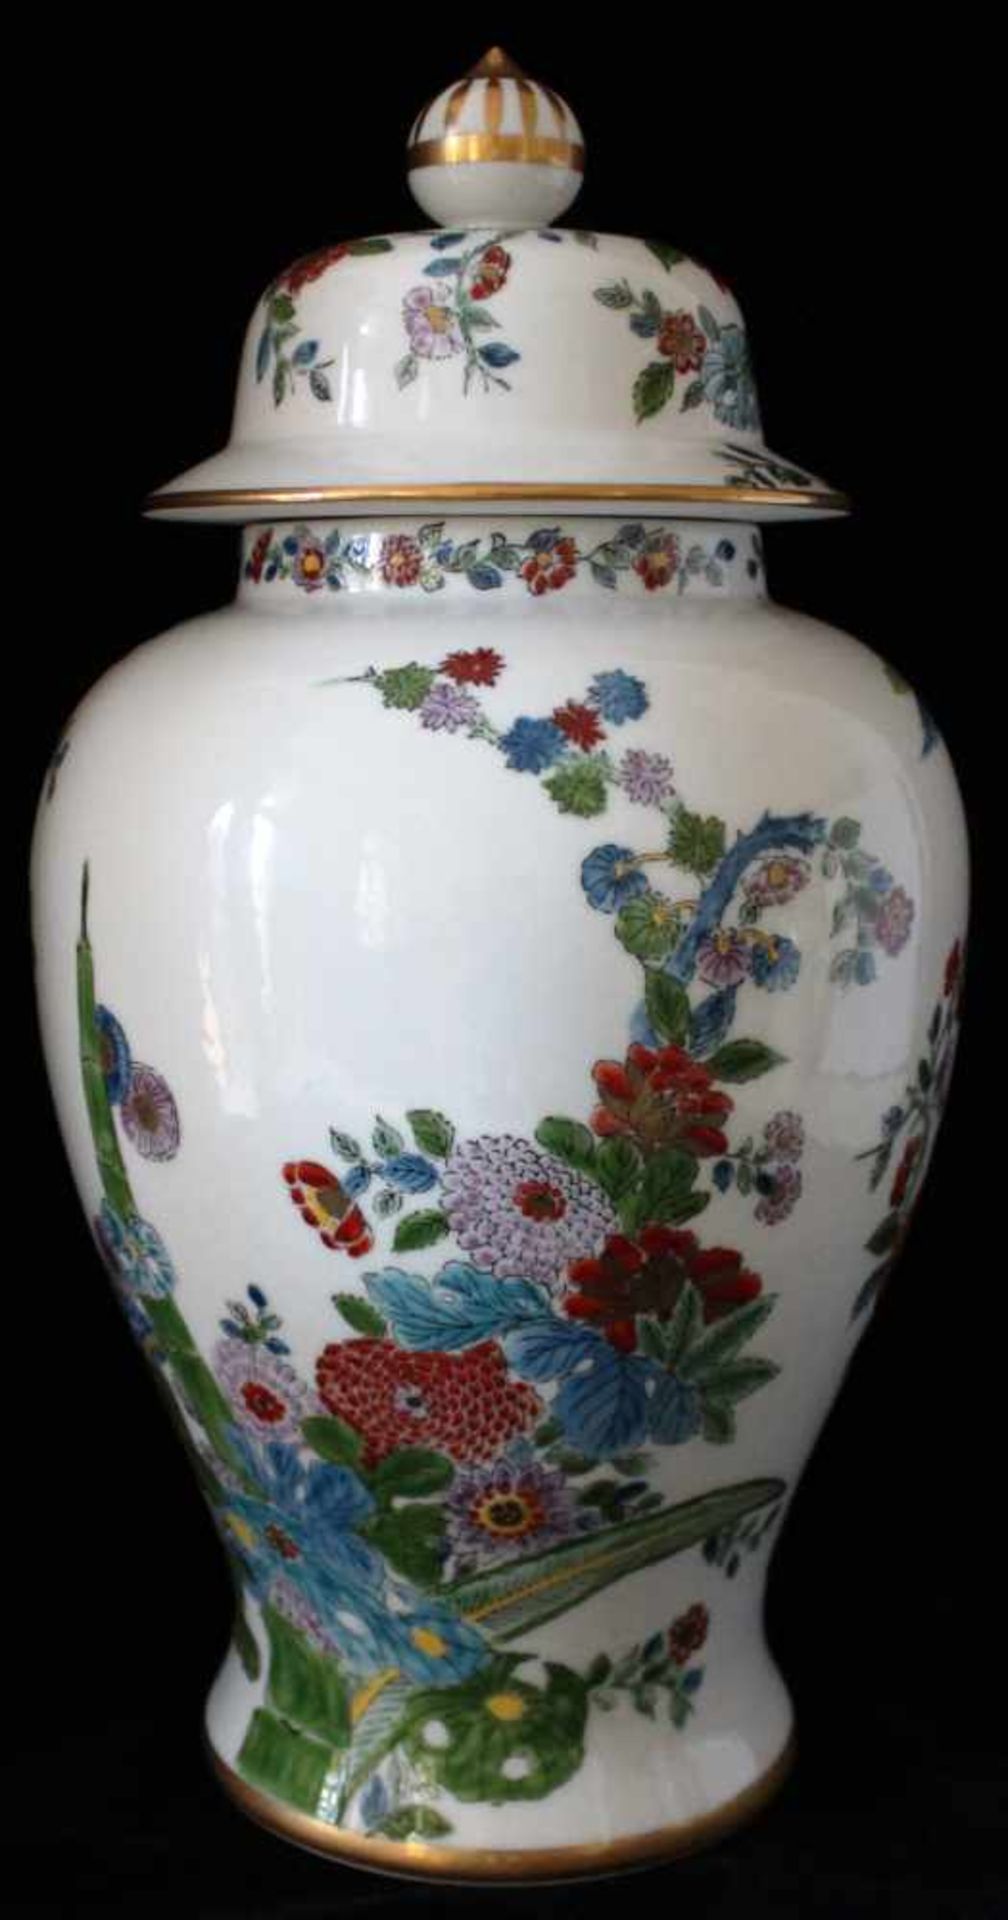 chin. Deckelvase chin. Deckelvase, 41cm hoch, gemarkt, handbemalt mit floralem Muster - Bild 2 aus 3